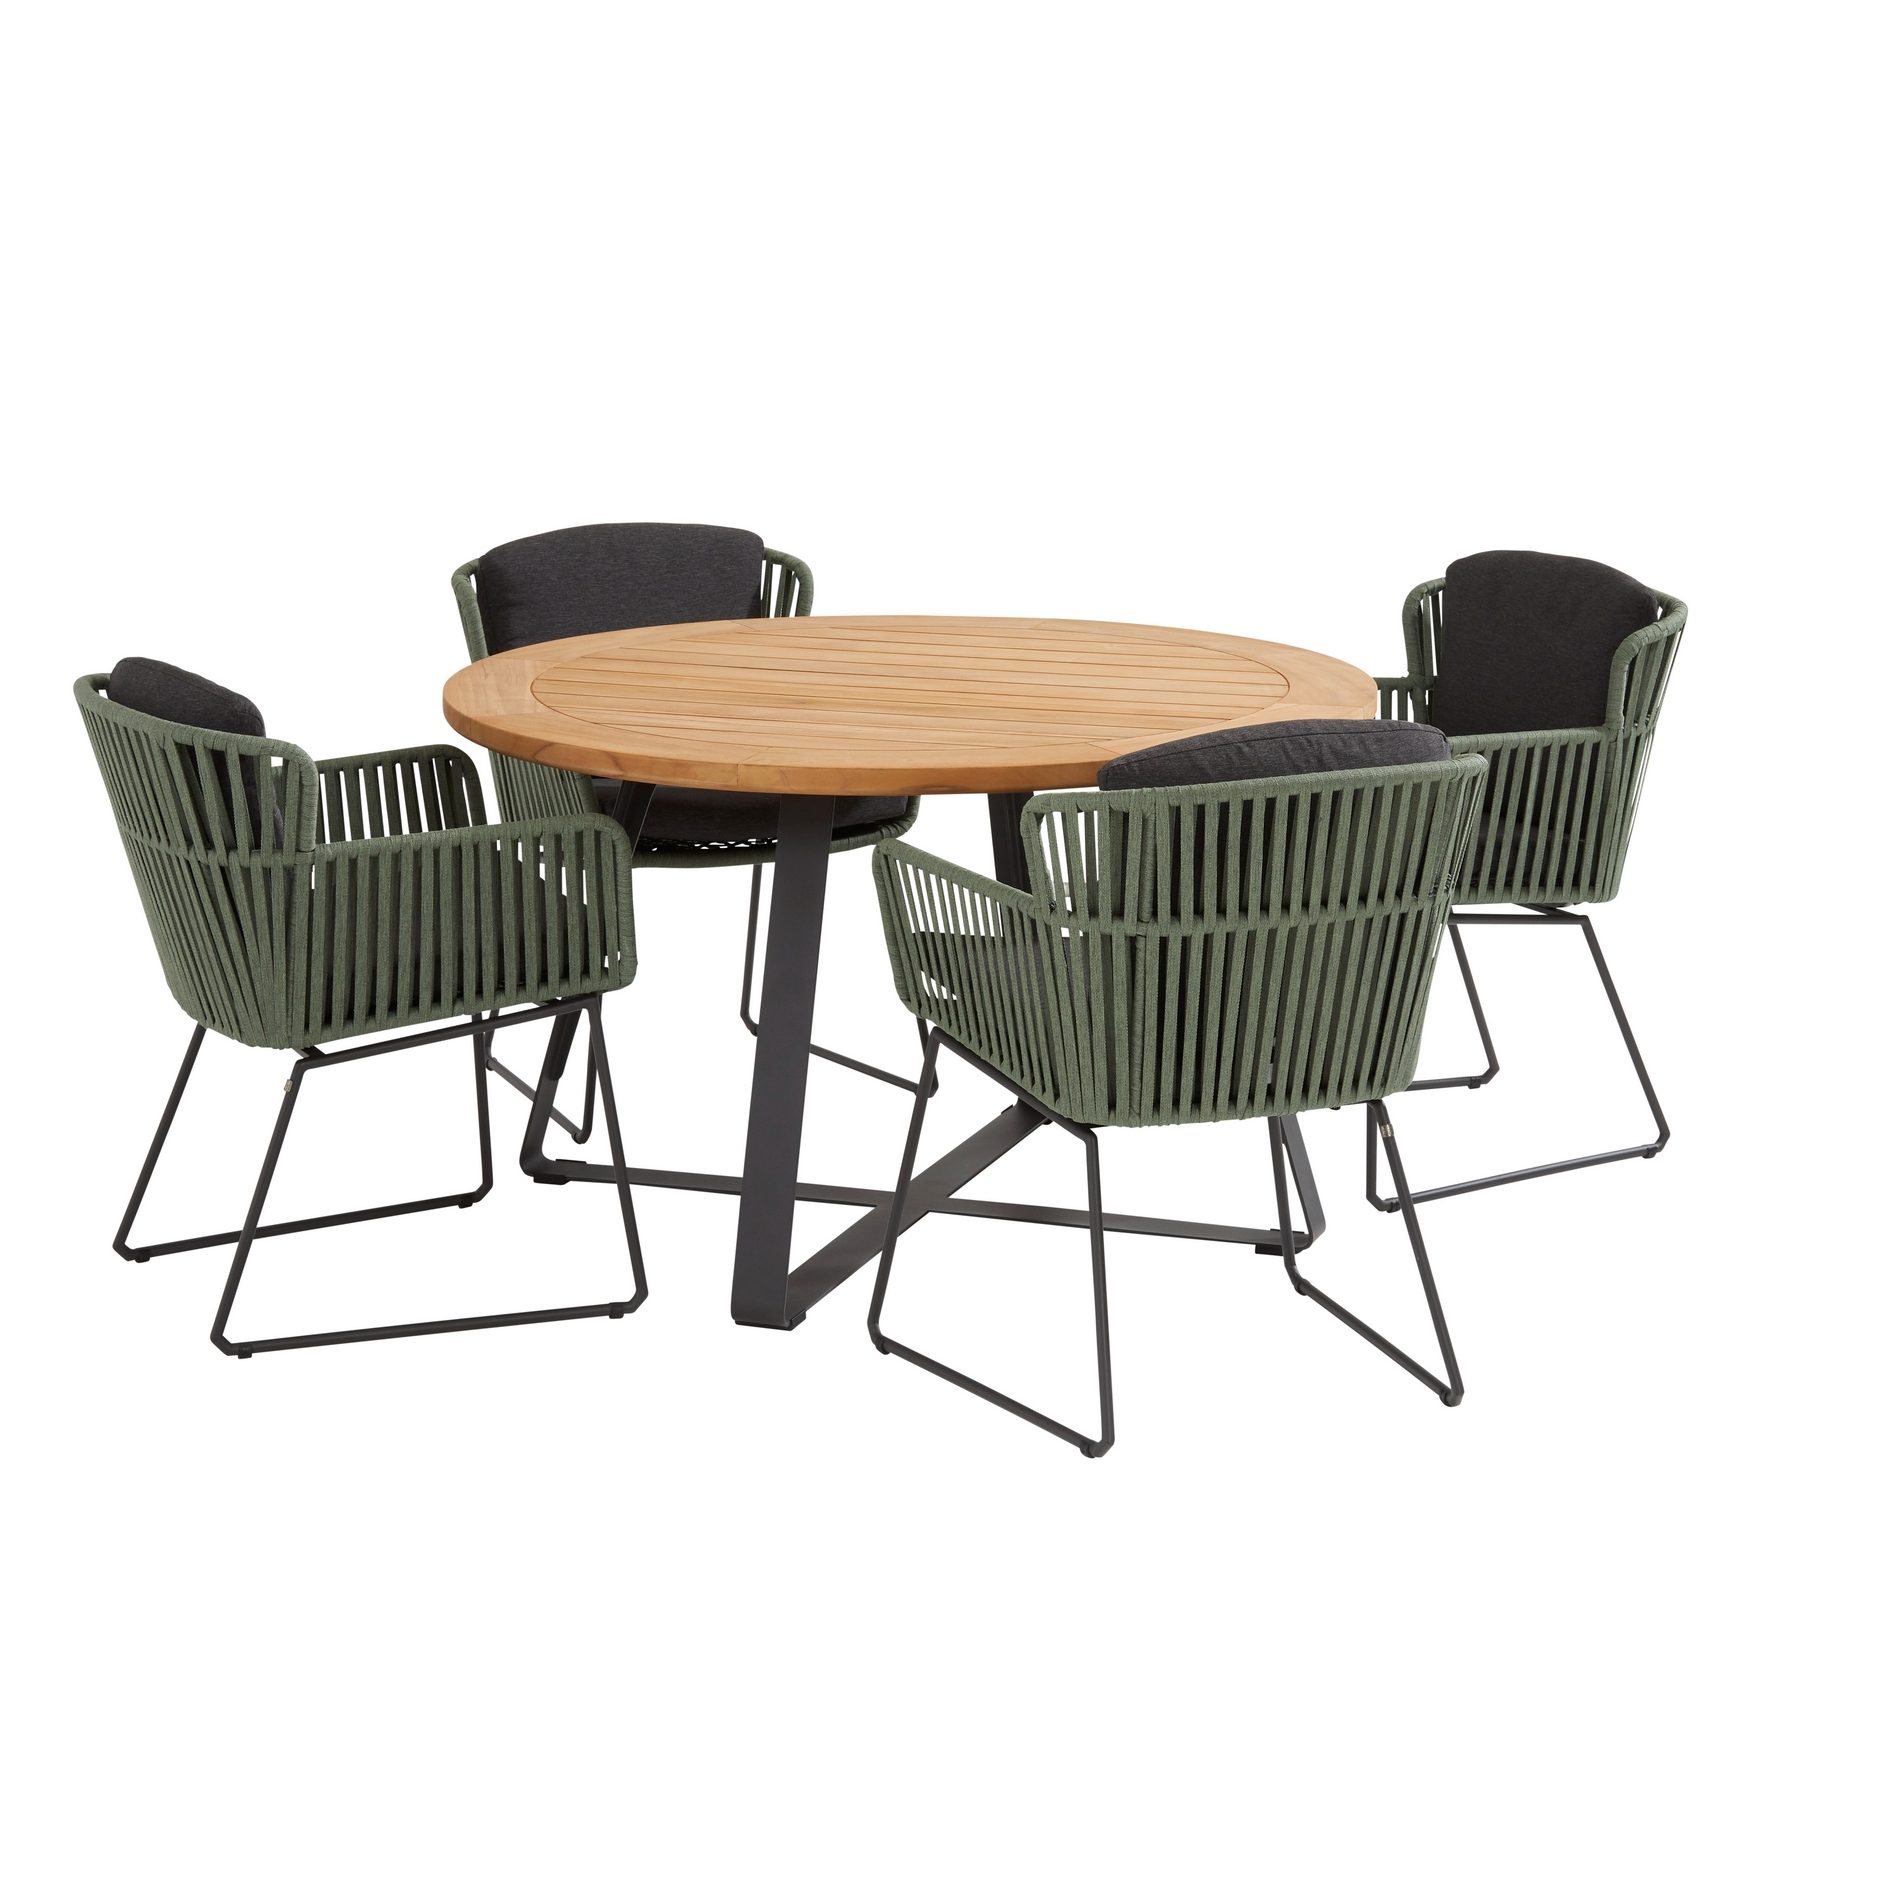 4Seasons Outdoor Gartenmöbel-Set mit Tisch "Basso" Ø 130 cm und Diningsessel "Vitali", Rope grün